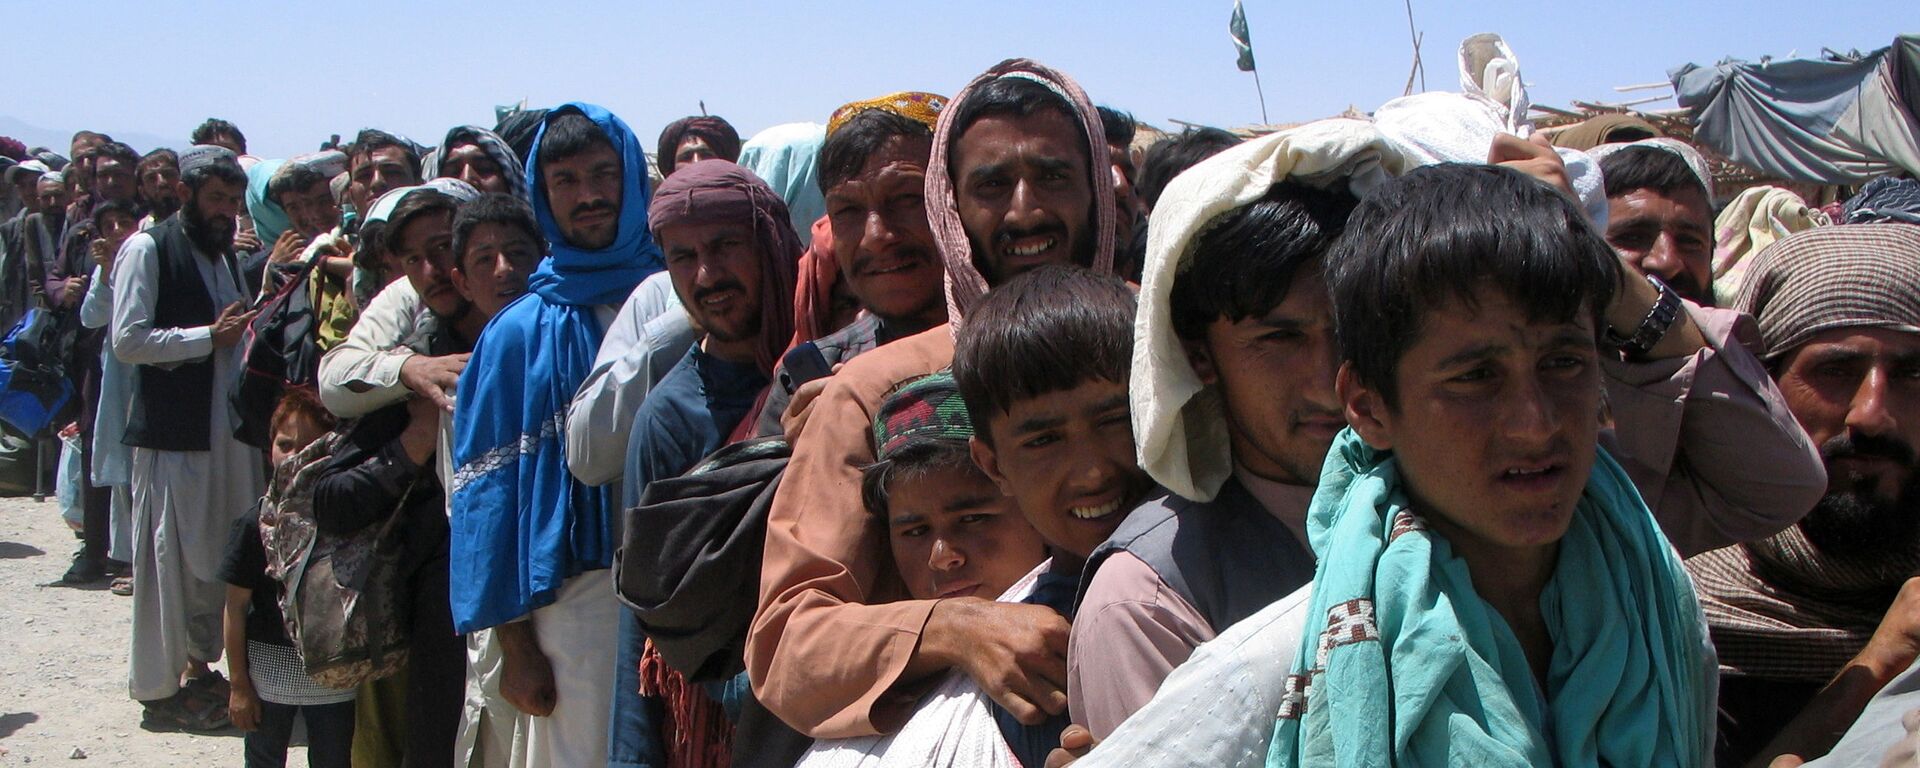 Nhóm người trước trạm kiểm soát Cổng Tình bạn ở Chaman, thị trấn biên giới Pakistan-Afghanistan,  Pakistan - Sputnik Việt Nam, 1920, 08.10.2021